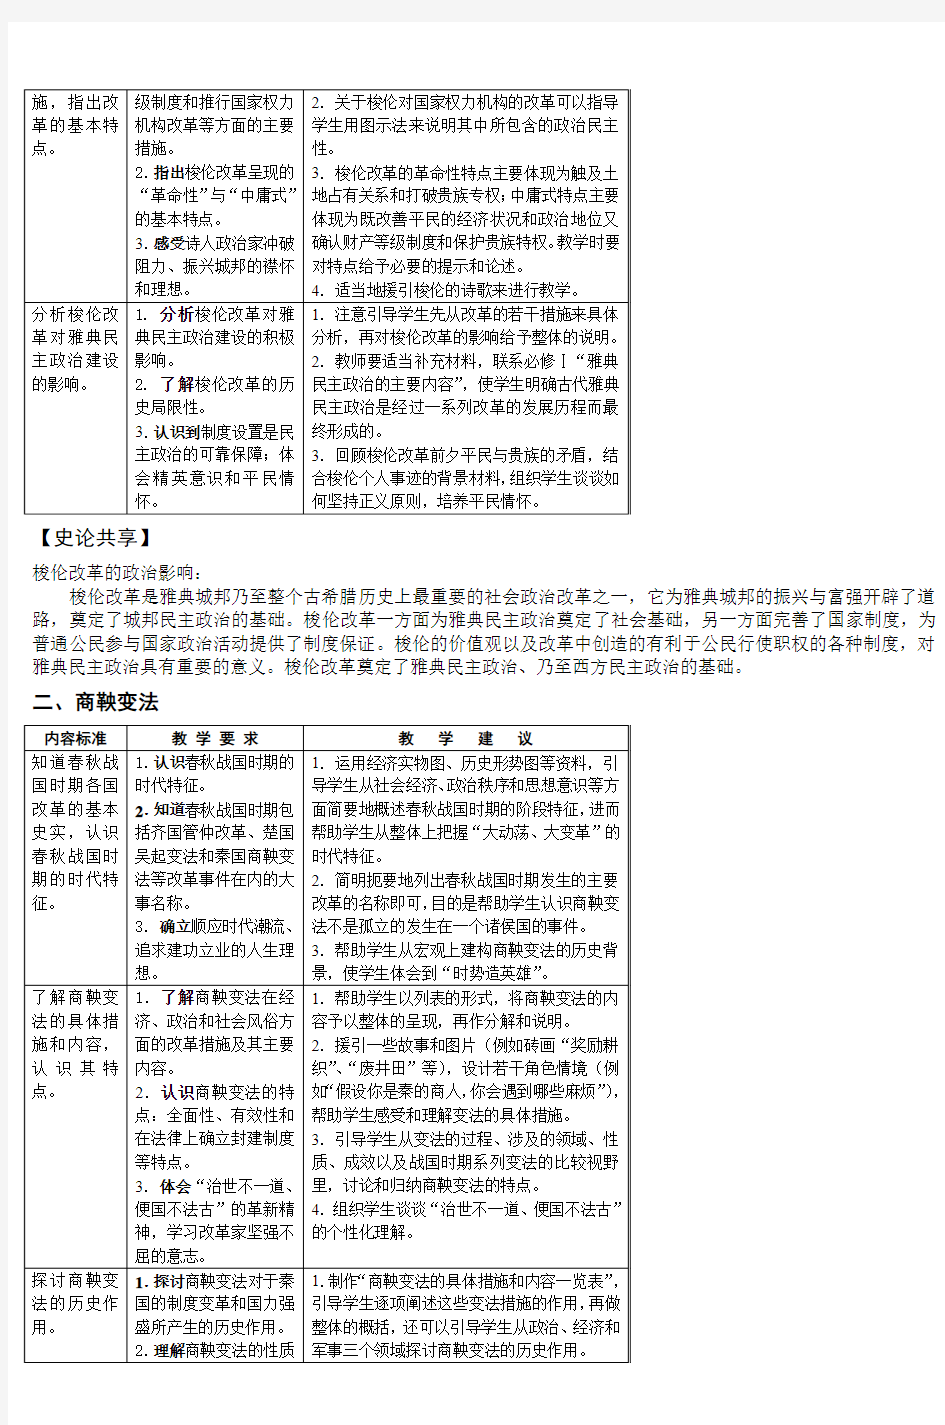 江苏省高中历史课程标准教学要求